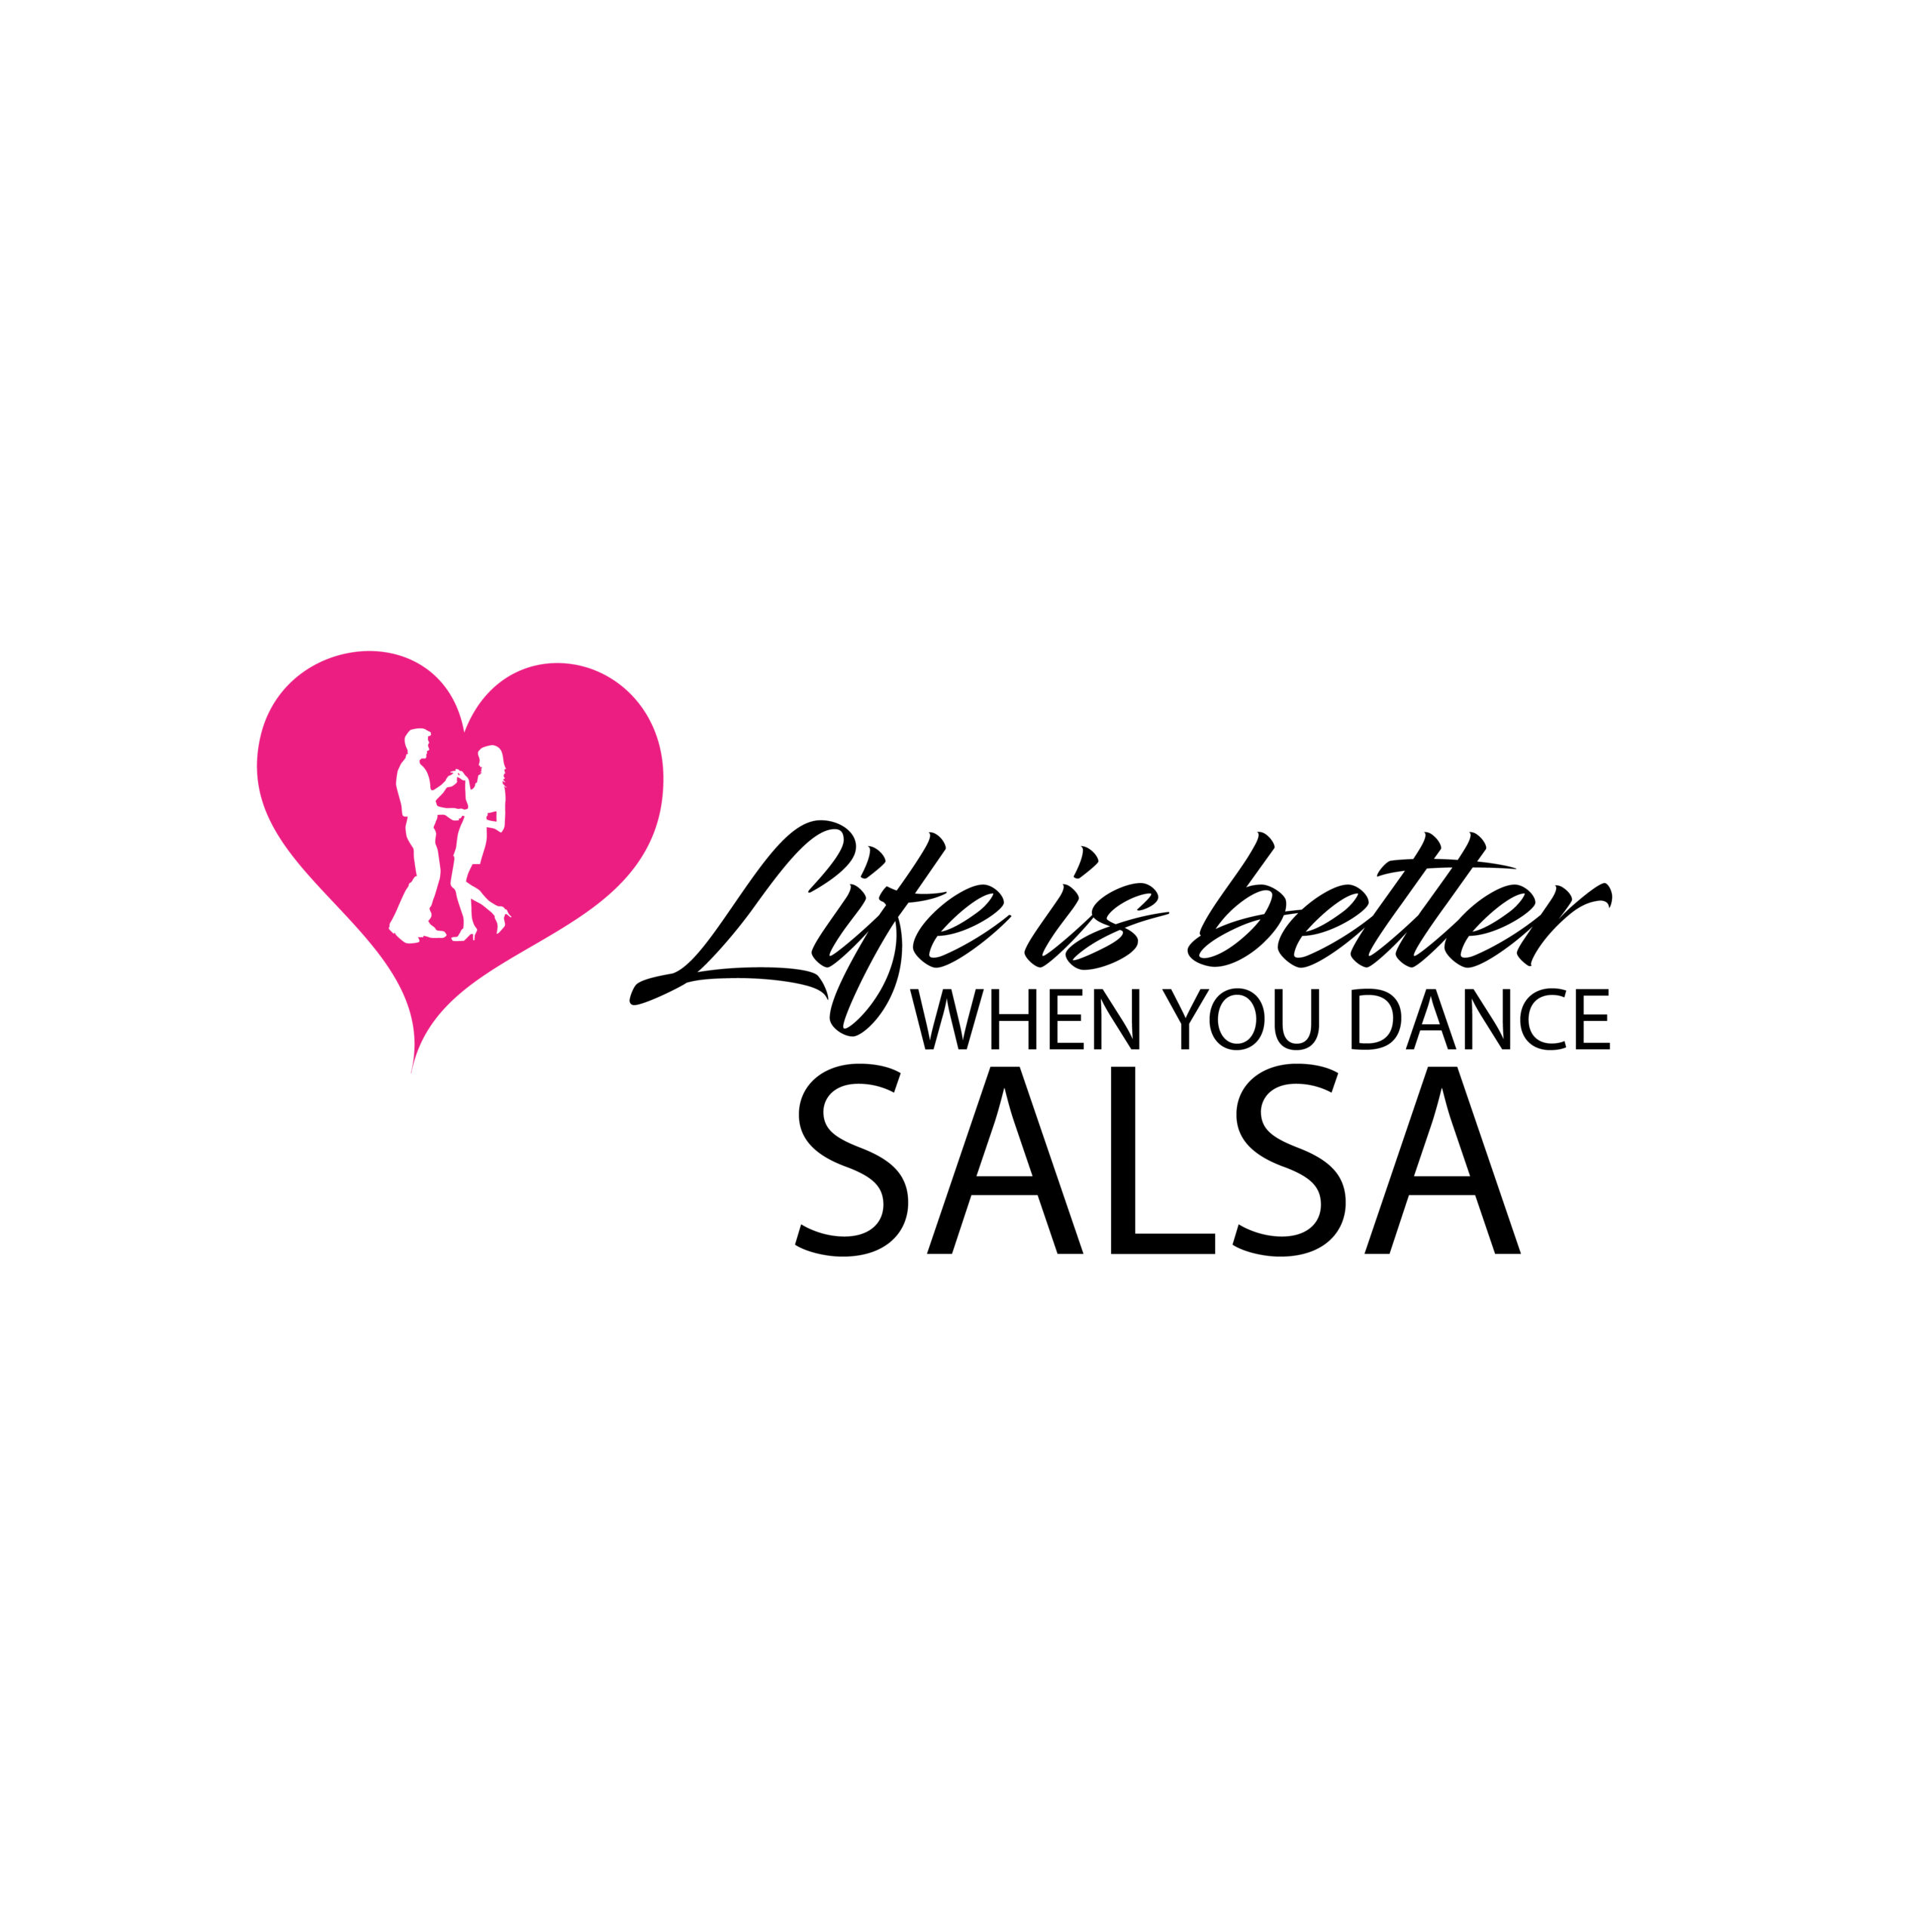 Life is better salsa-01-01heart-01